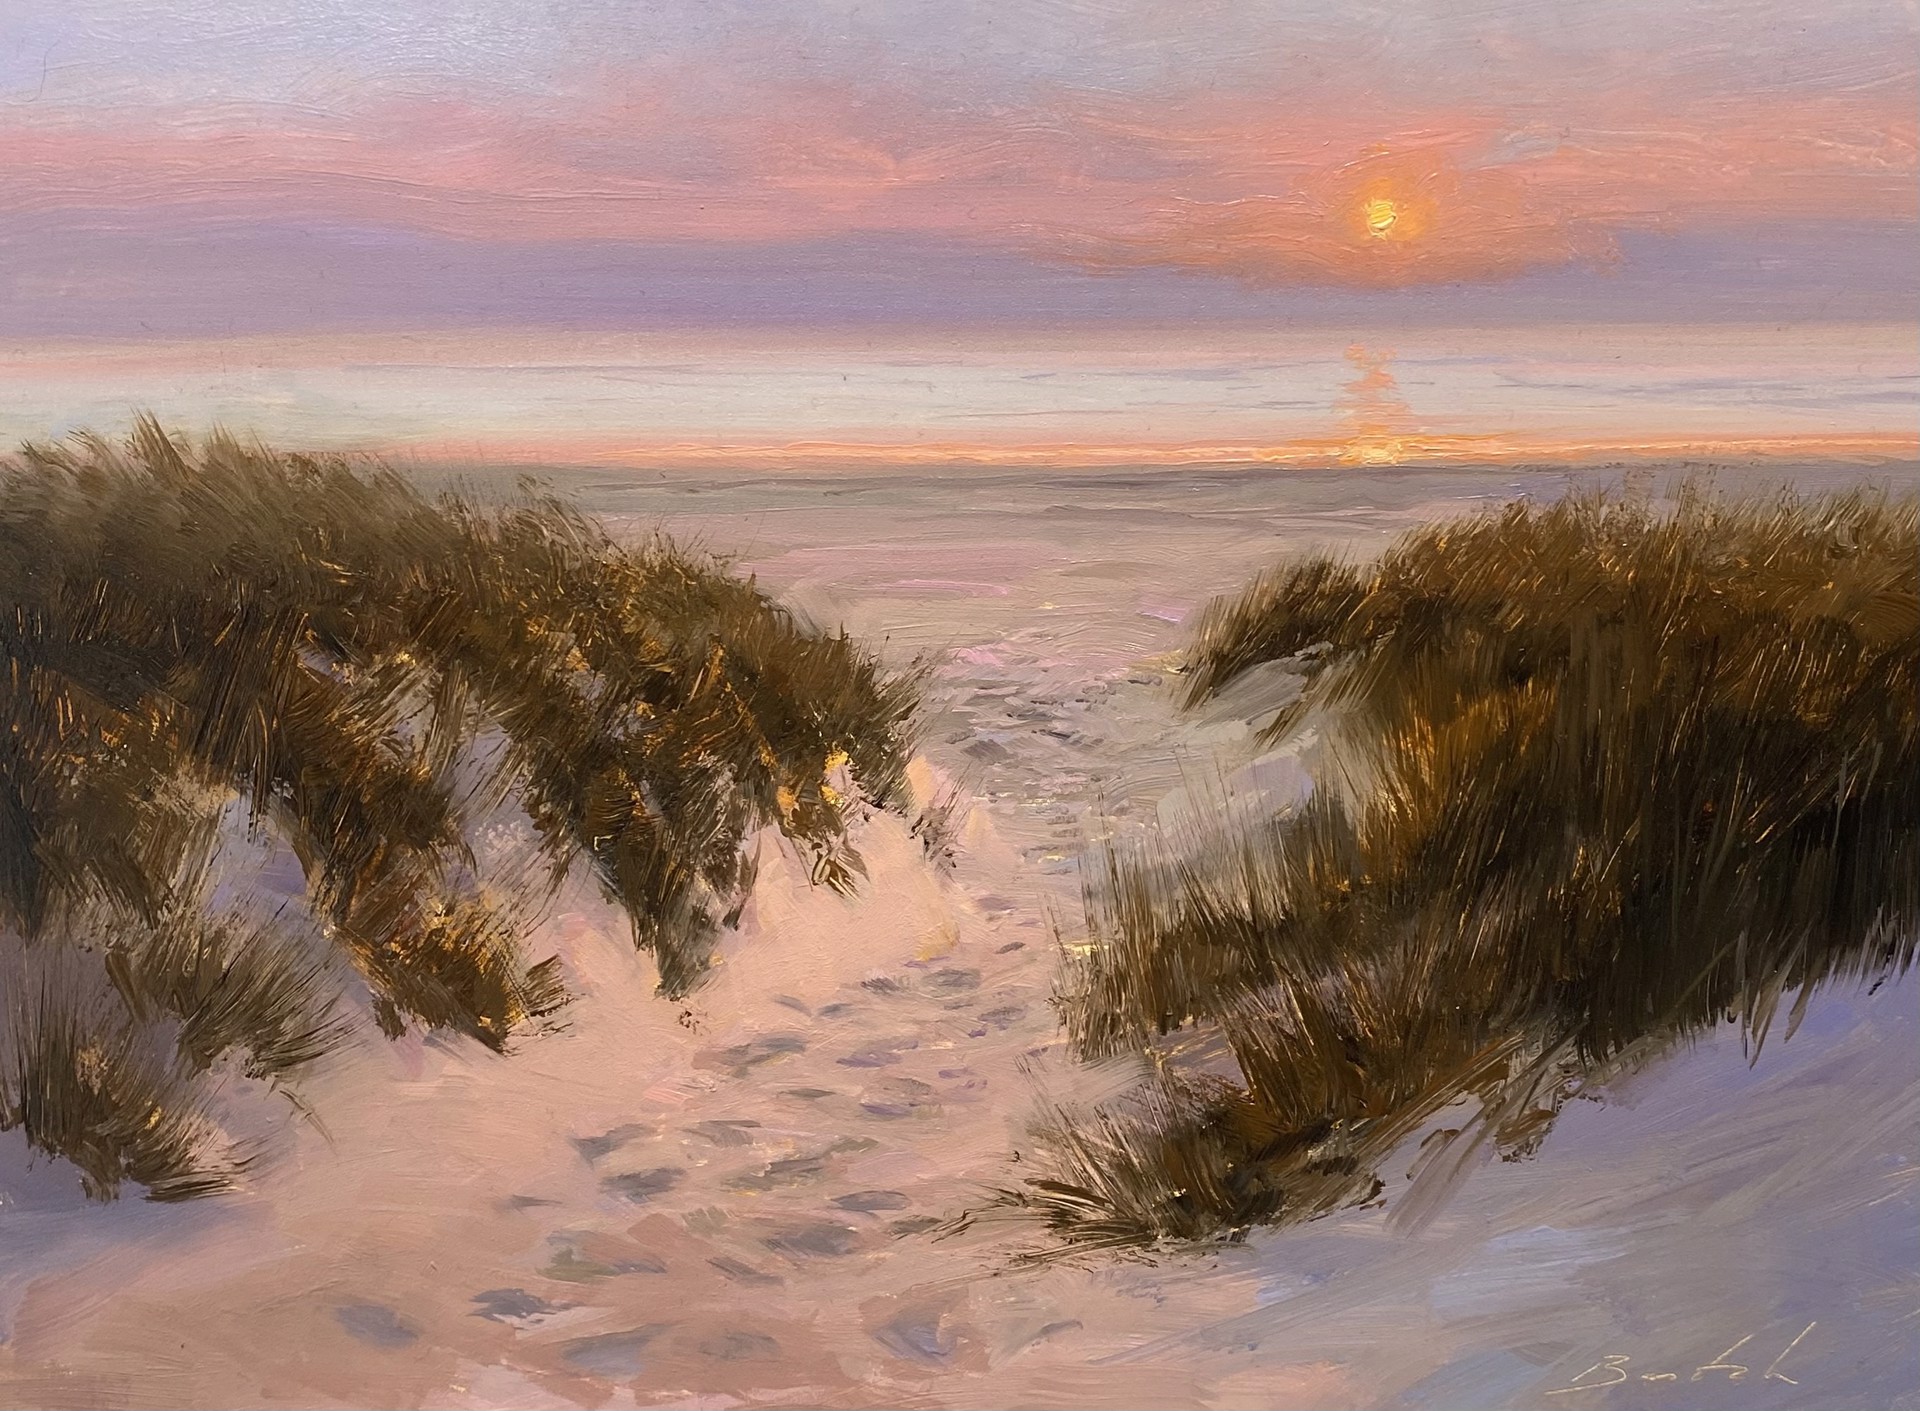 Sunlit Sands by Paul Batch